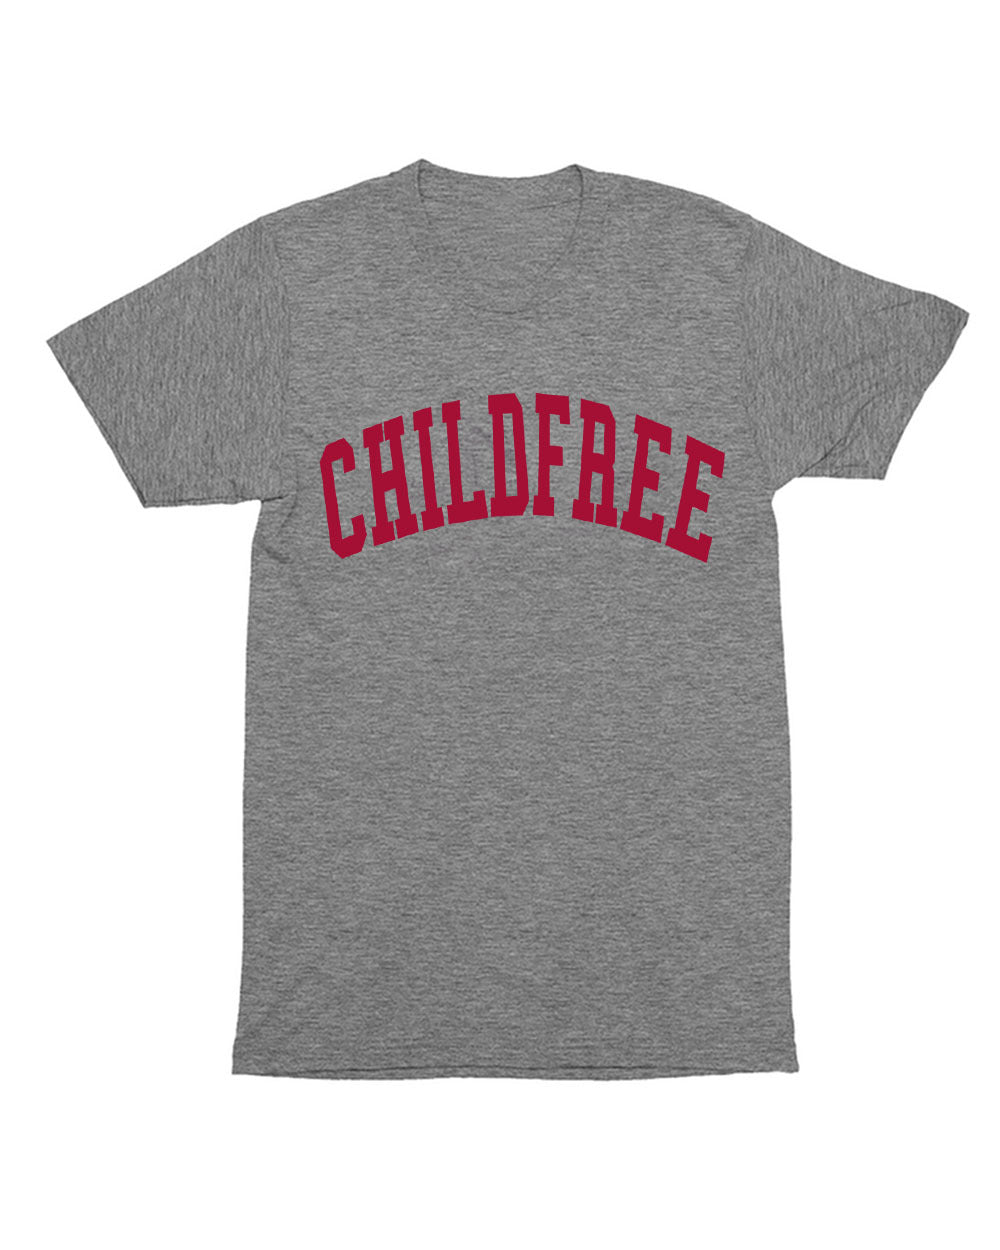 Childfree T-Shirt